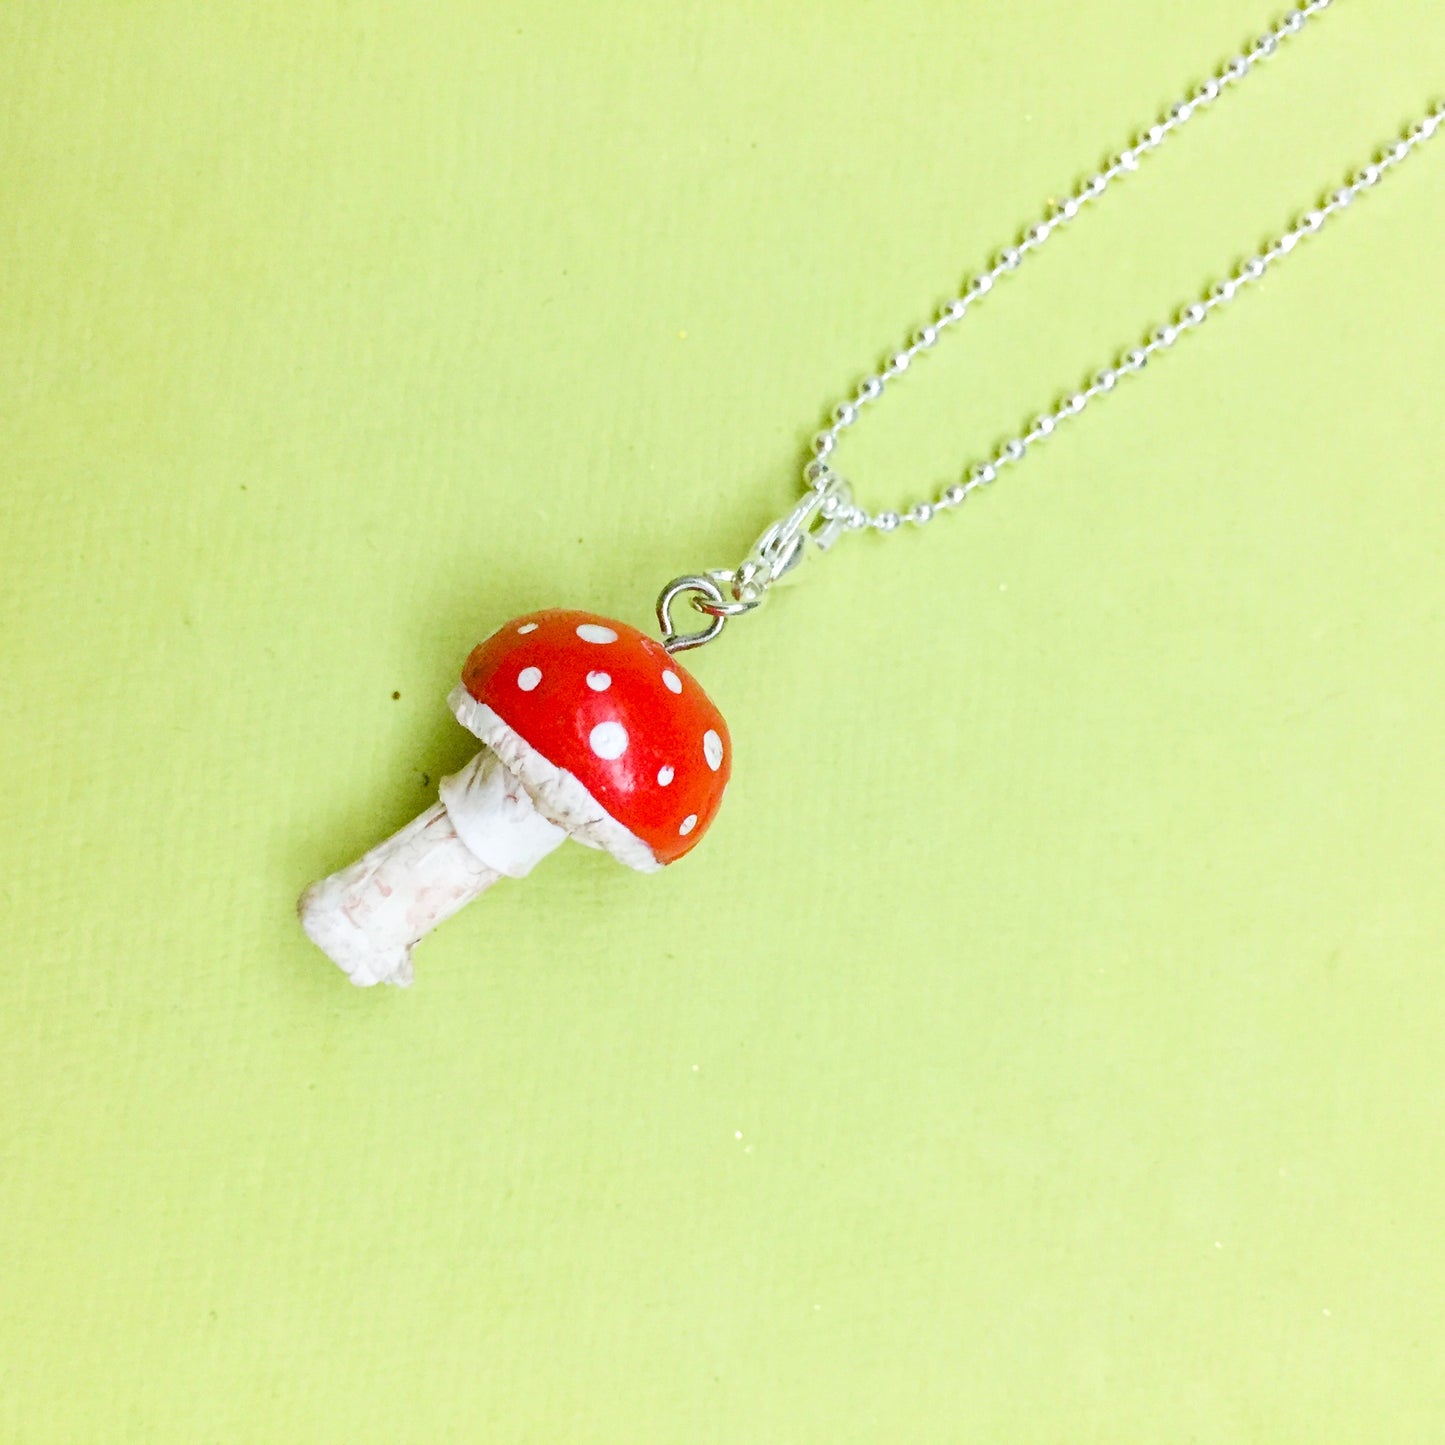 Red Mushroom Miniature Charm Pendant